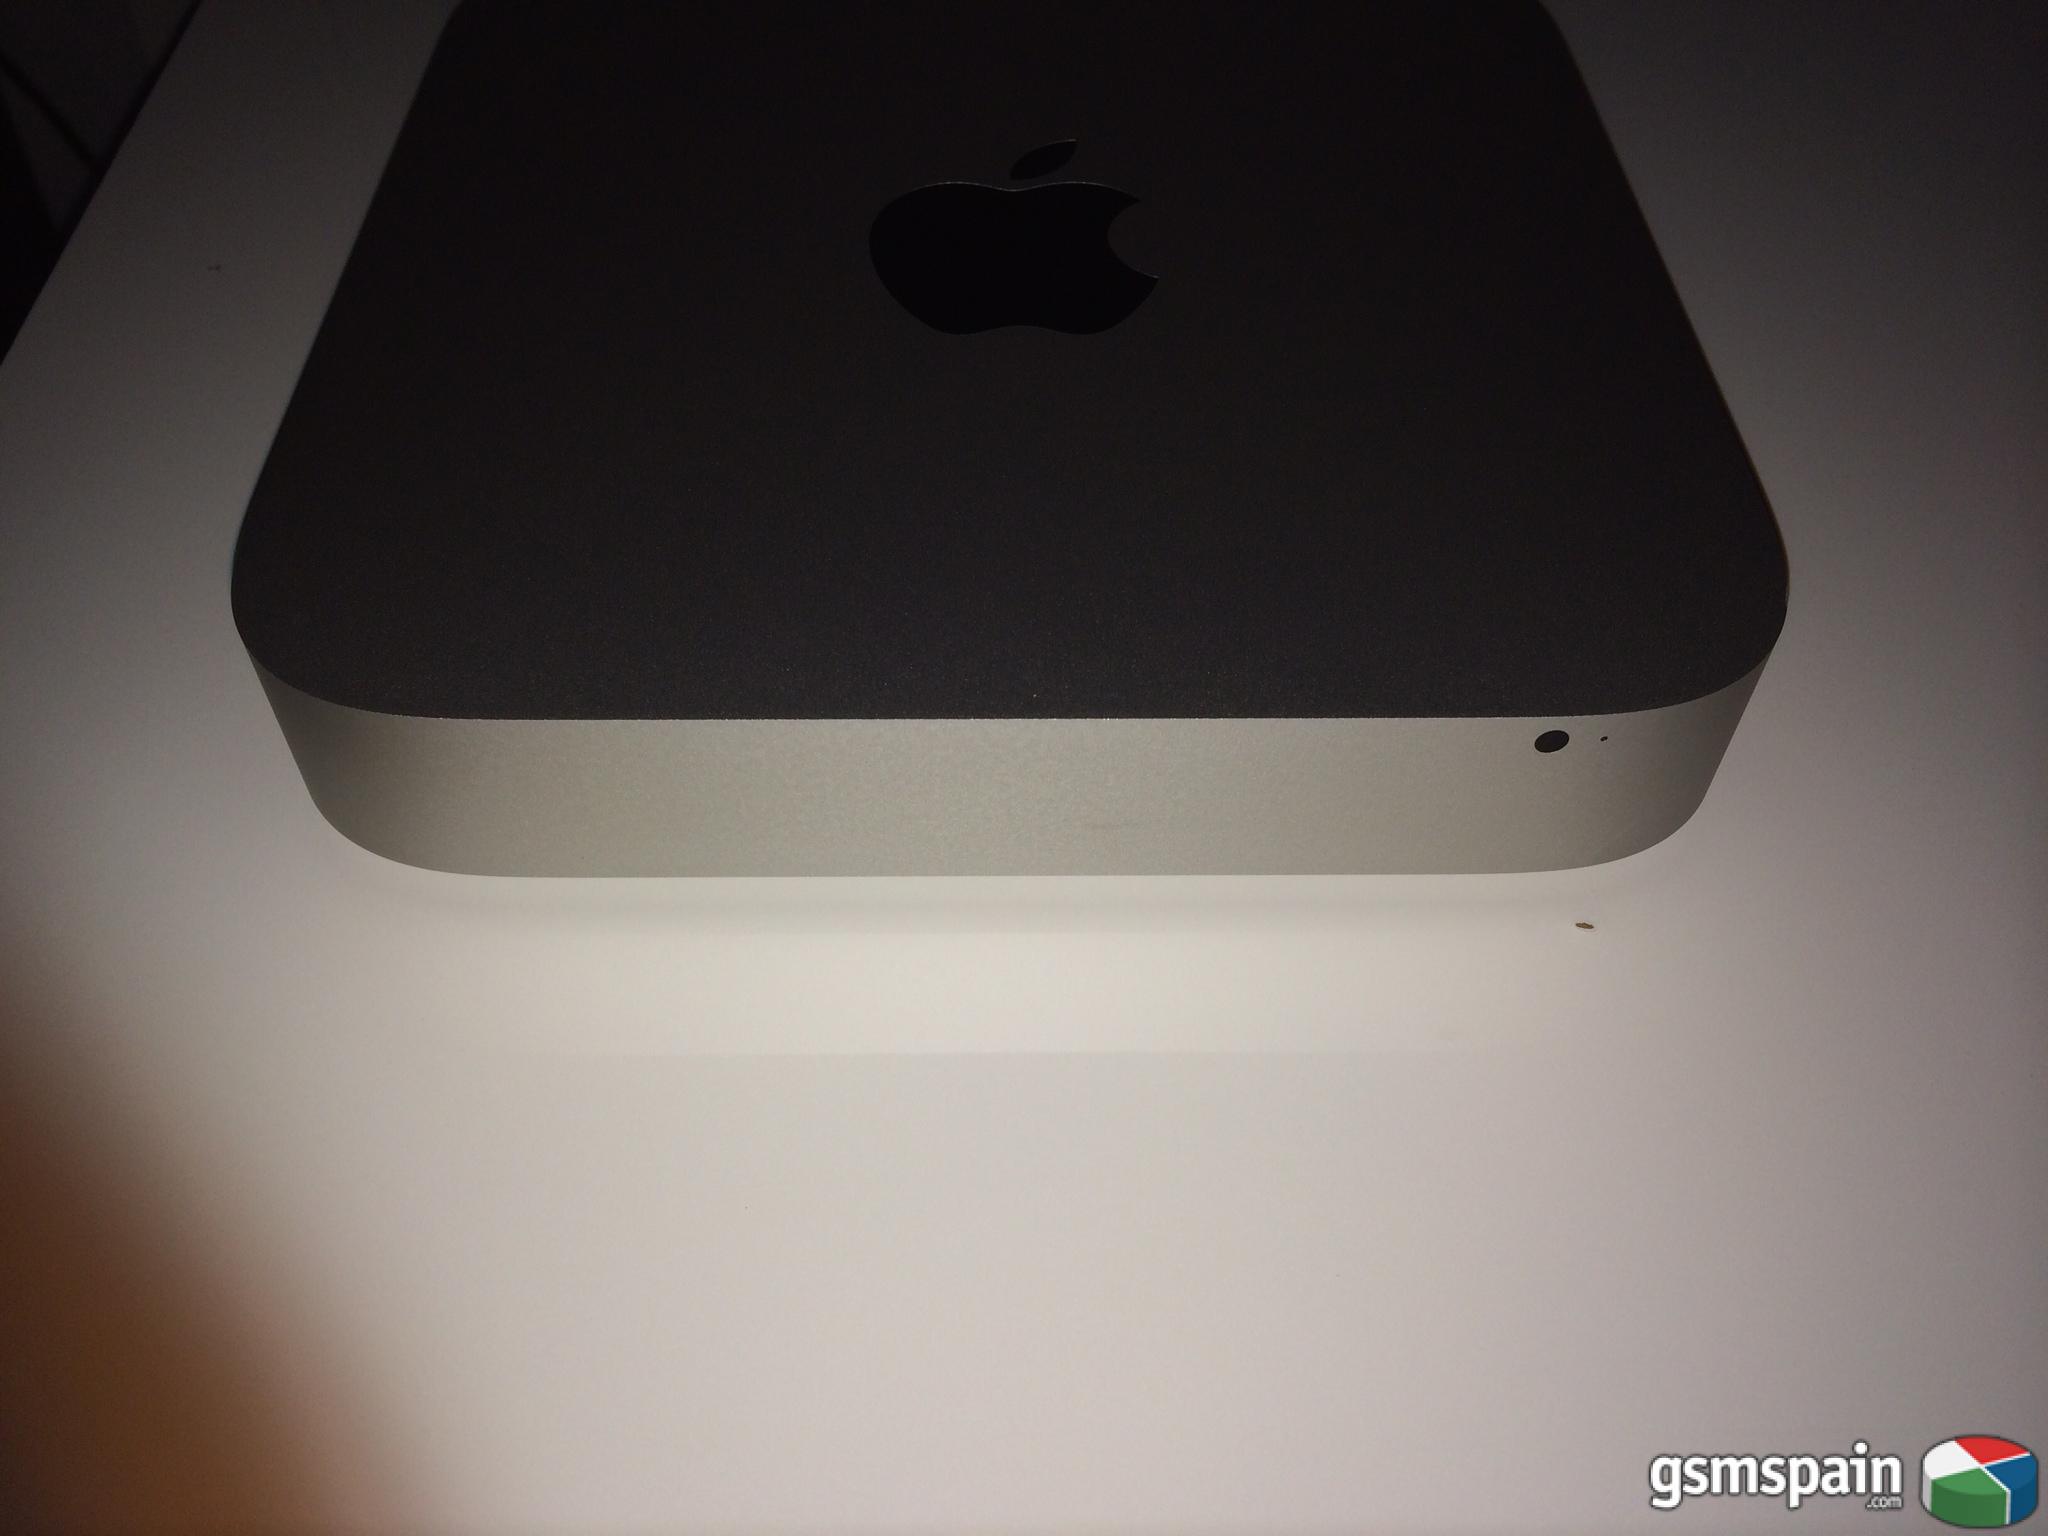 [VENDO] Apple Mac Mini modelo actual Store, i5, 4 GB Ram, 500 GB disco duro